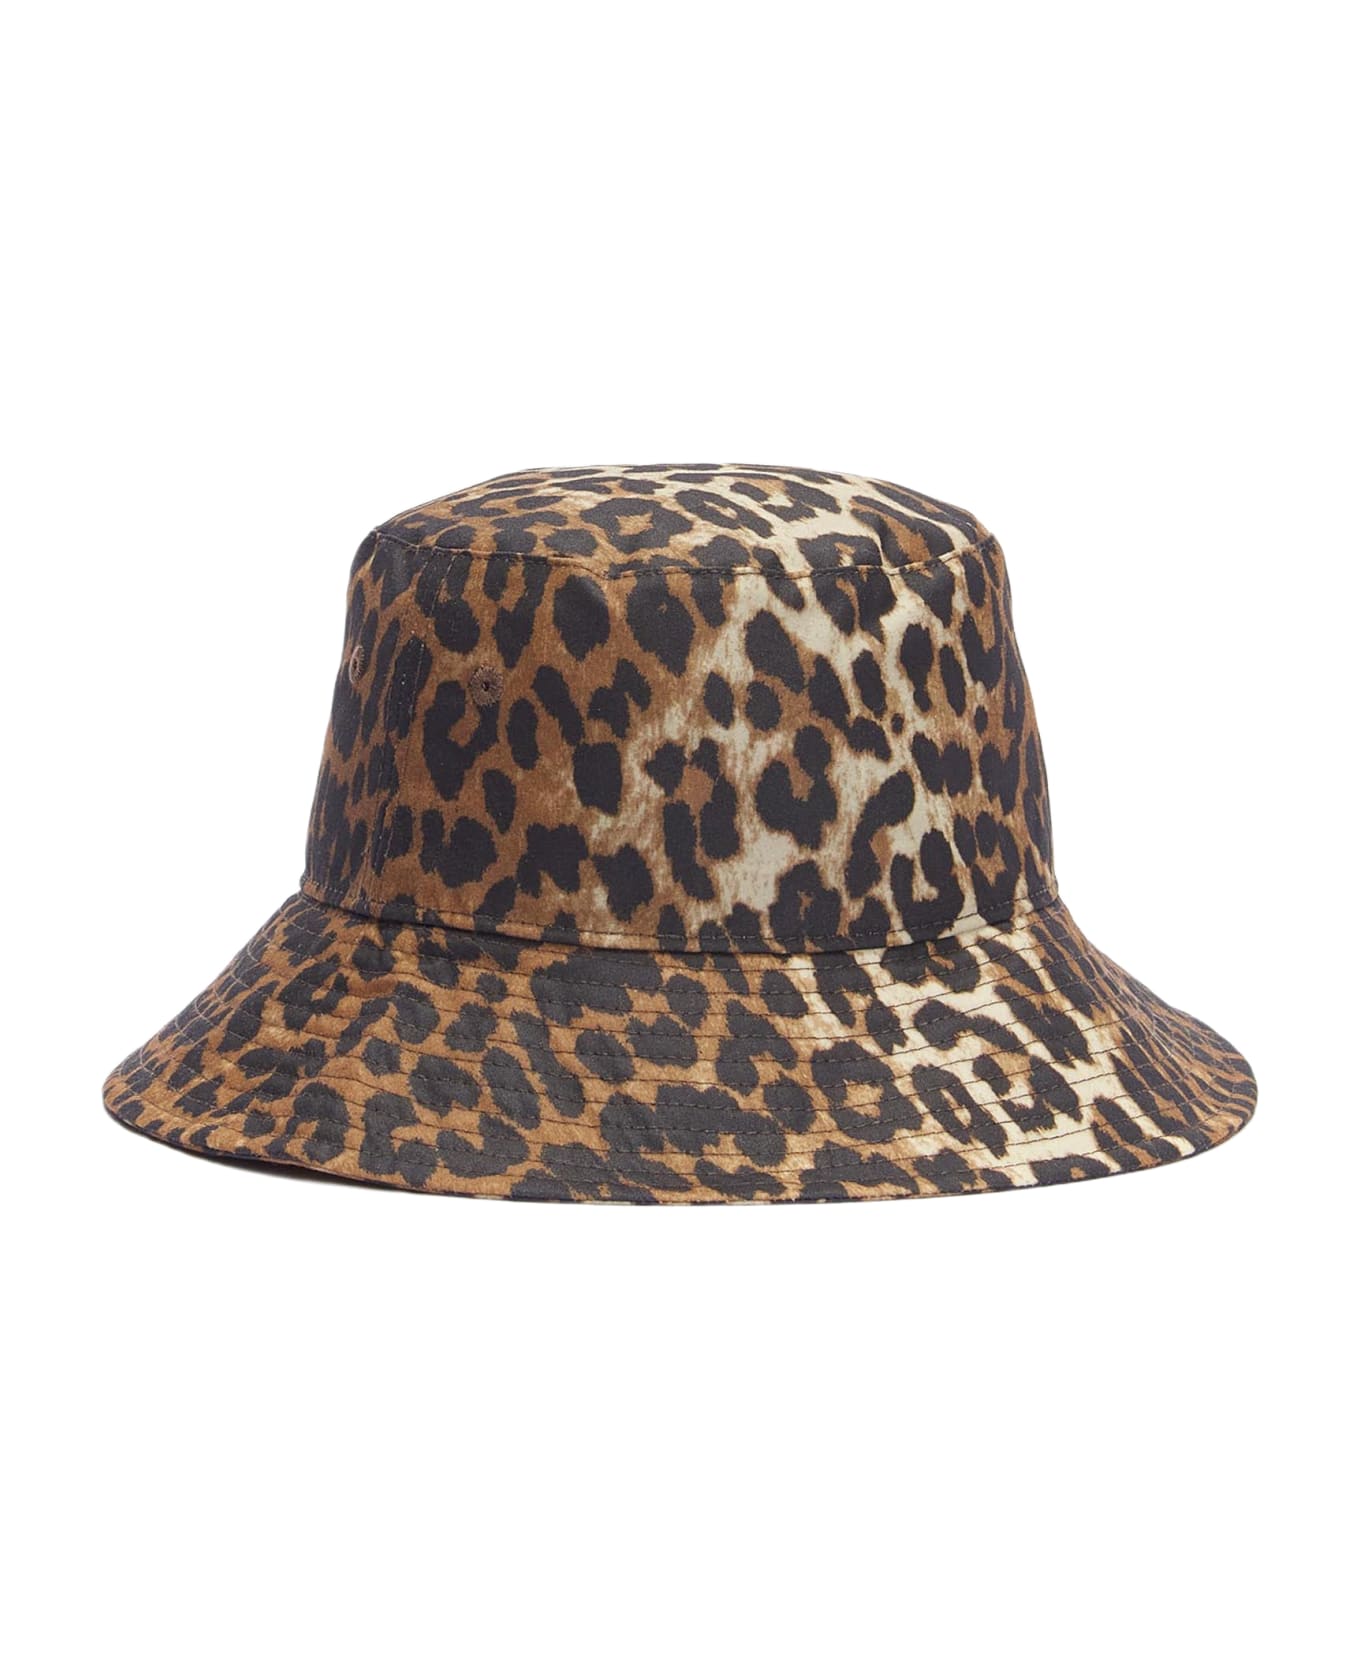 Barbour Bucket Hat Barbour X Ganni - Multicolor 帽子